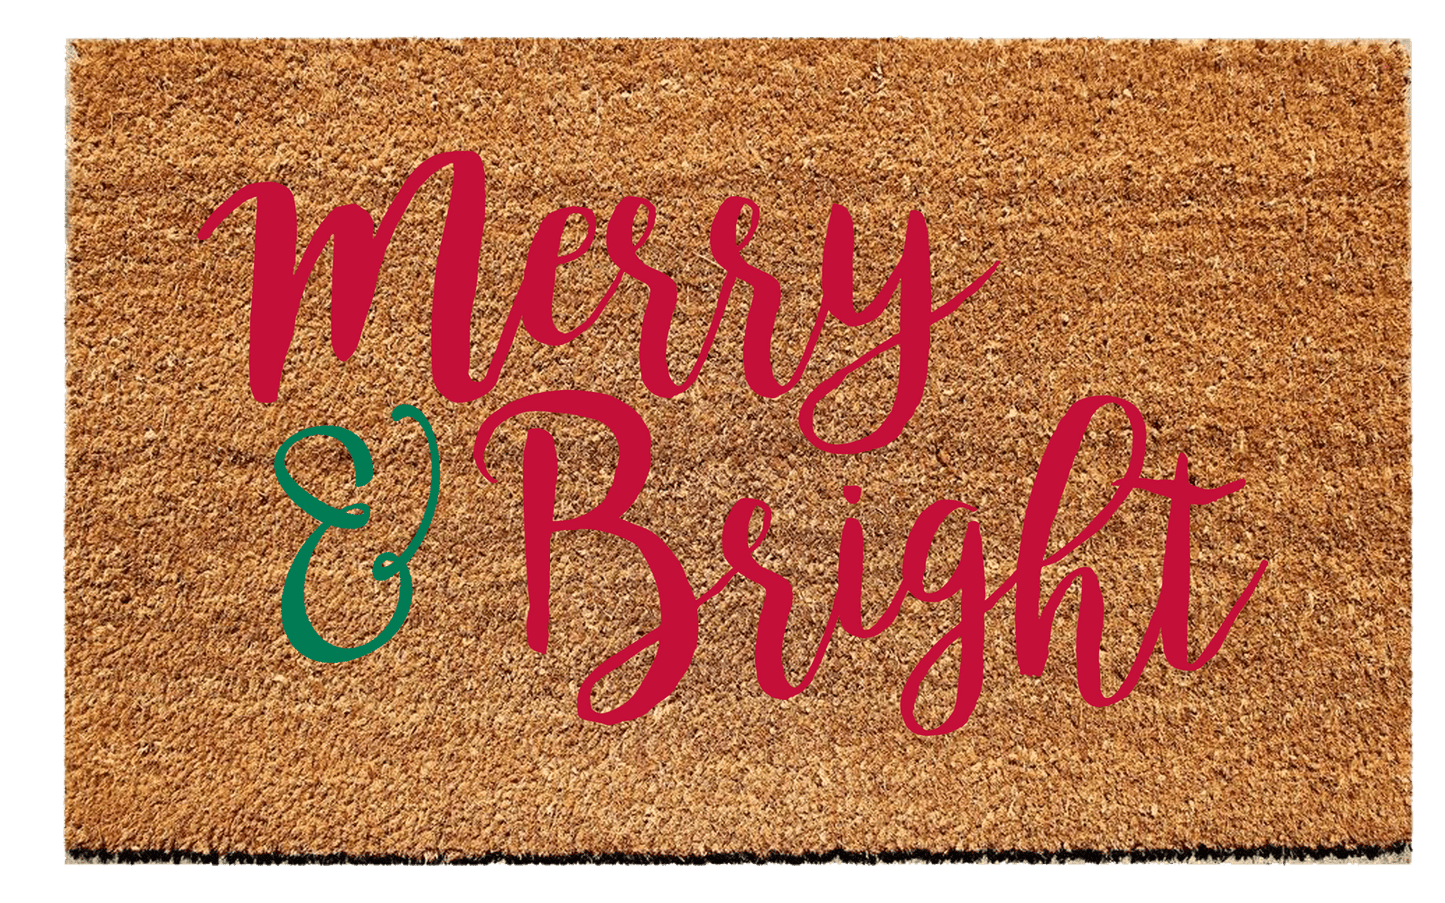 Merry & Bright Christmas Doormat